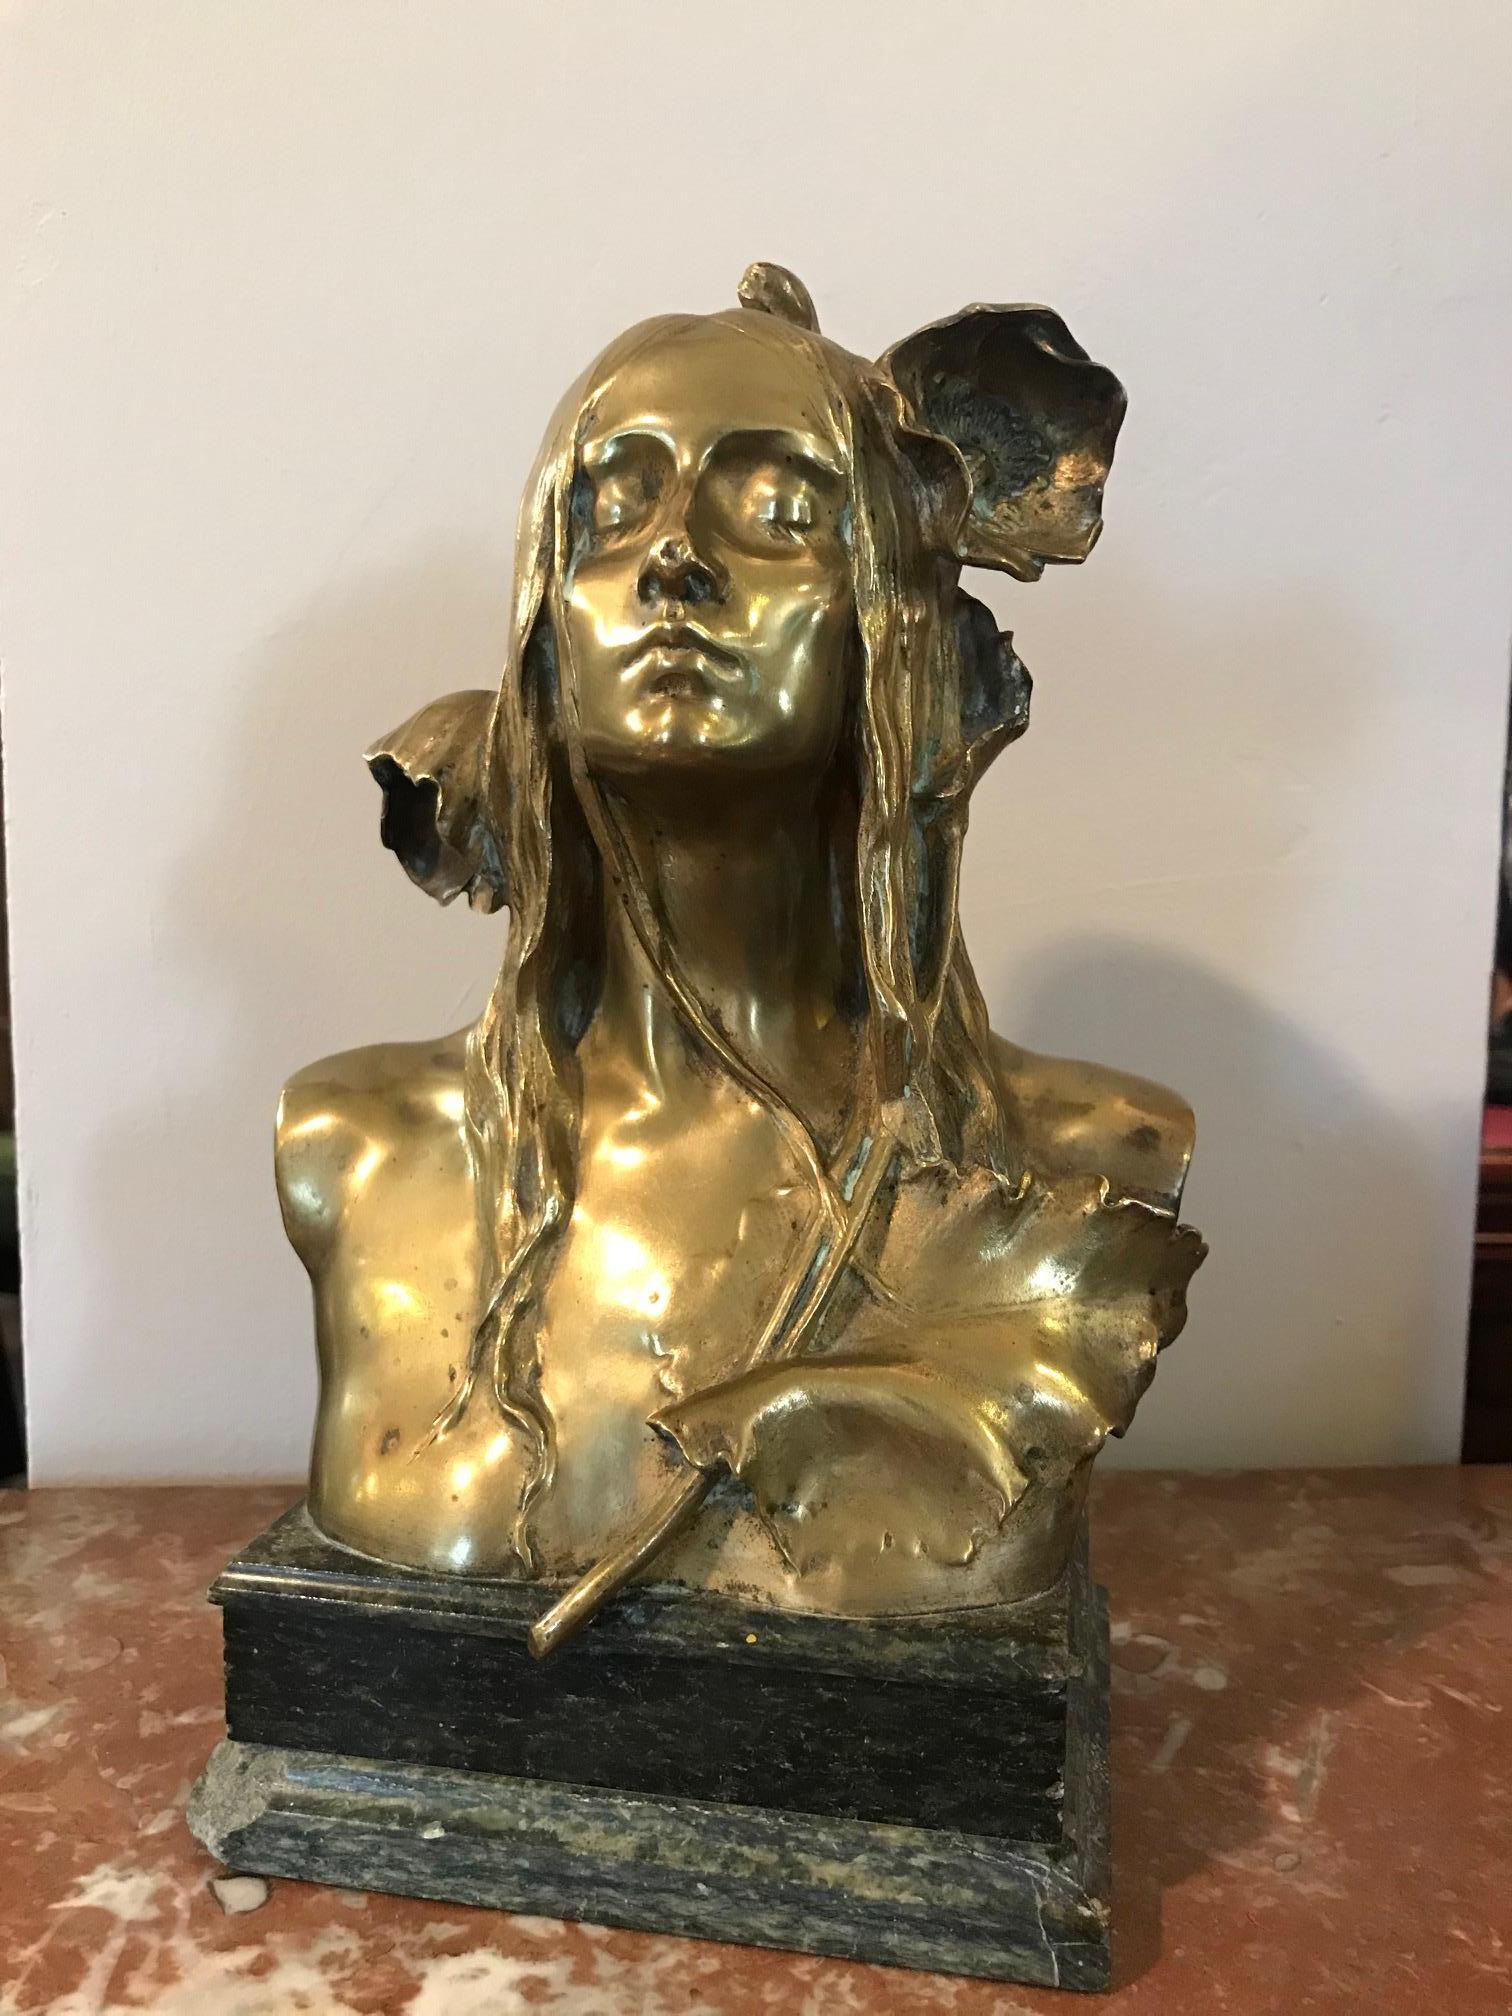 Belle et rare sculpture de femme en bronze doré Art Nouveau sur une base en marbre (un coin cassé). Très belle patine dorée. 
Nommée Ophélie:: et aussi appelée 